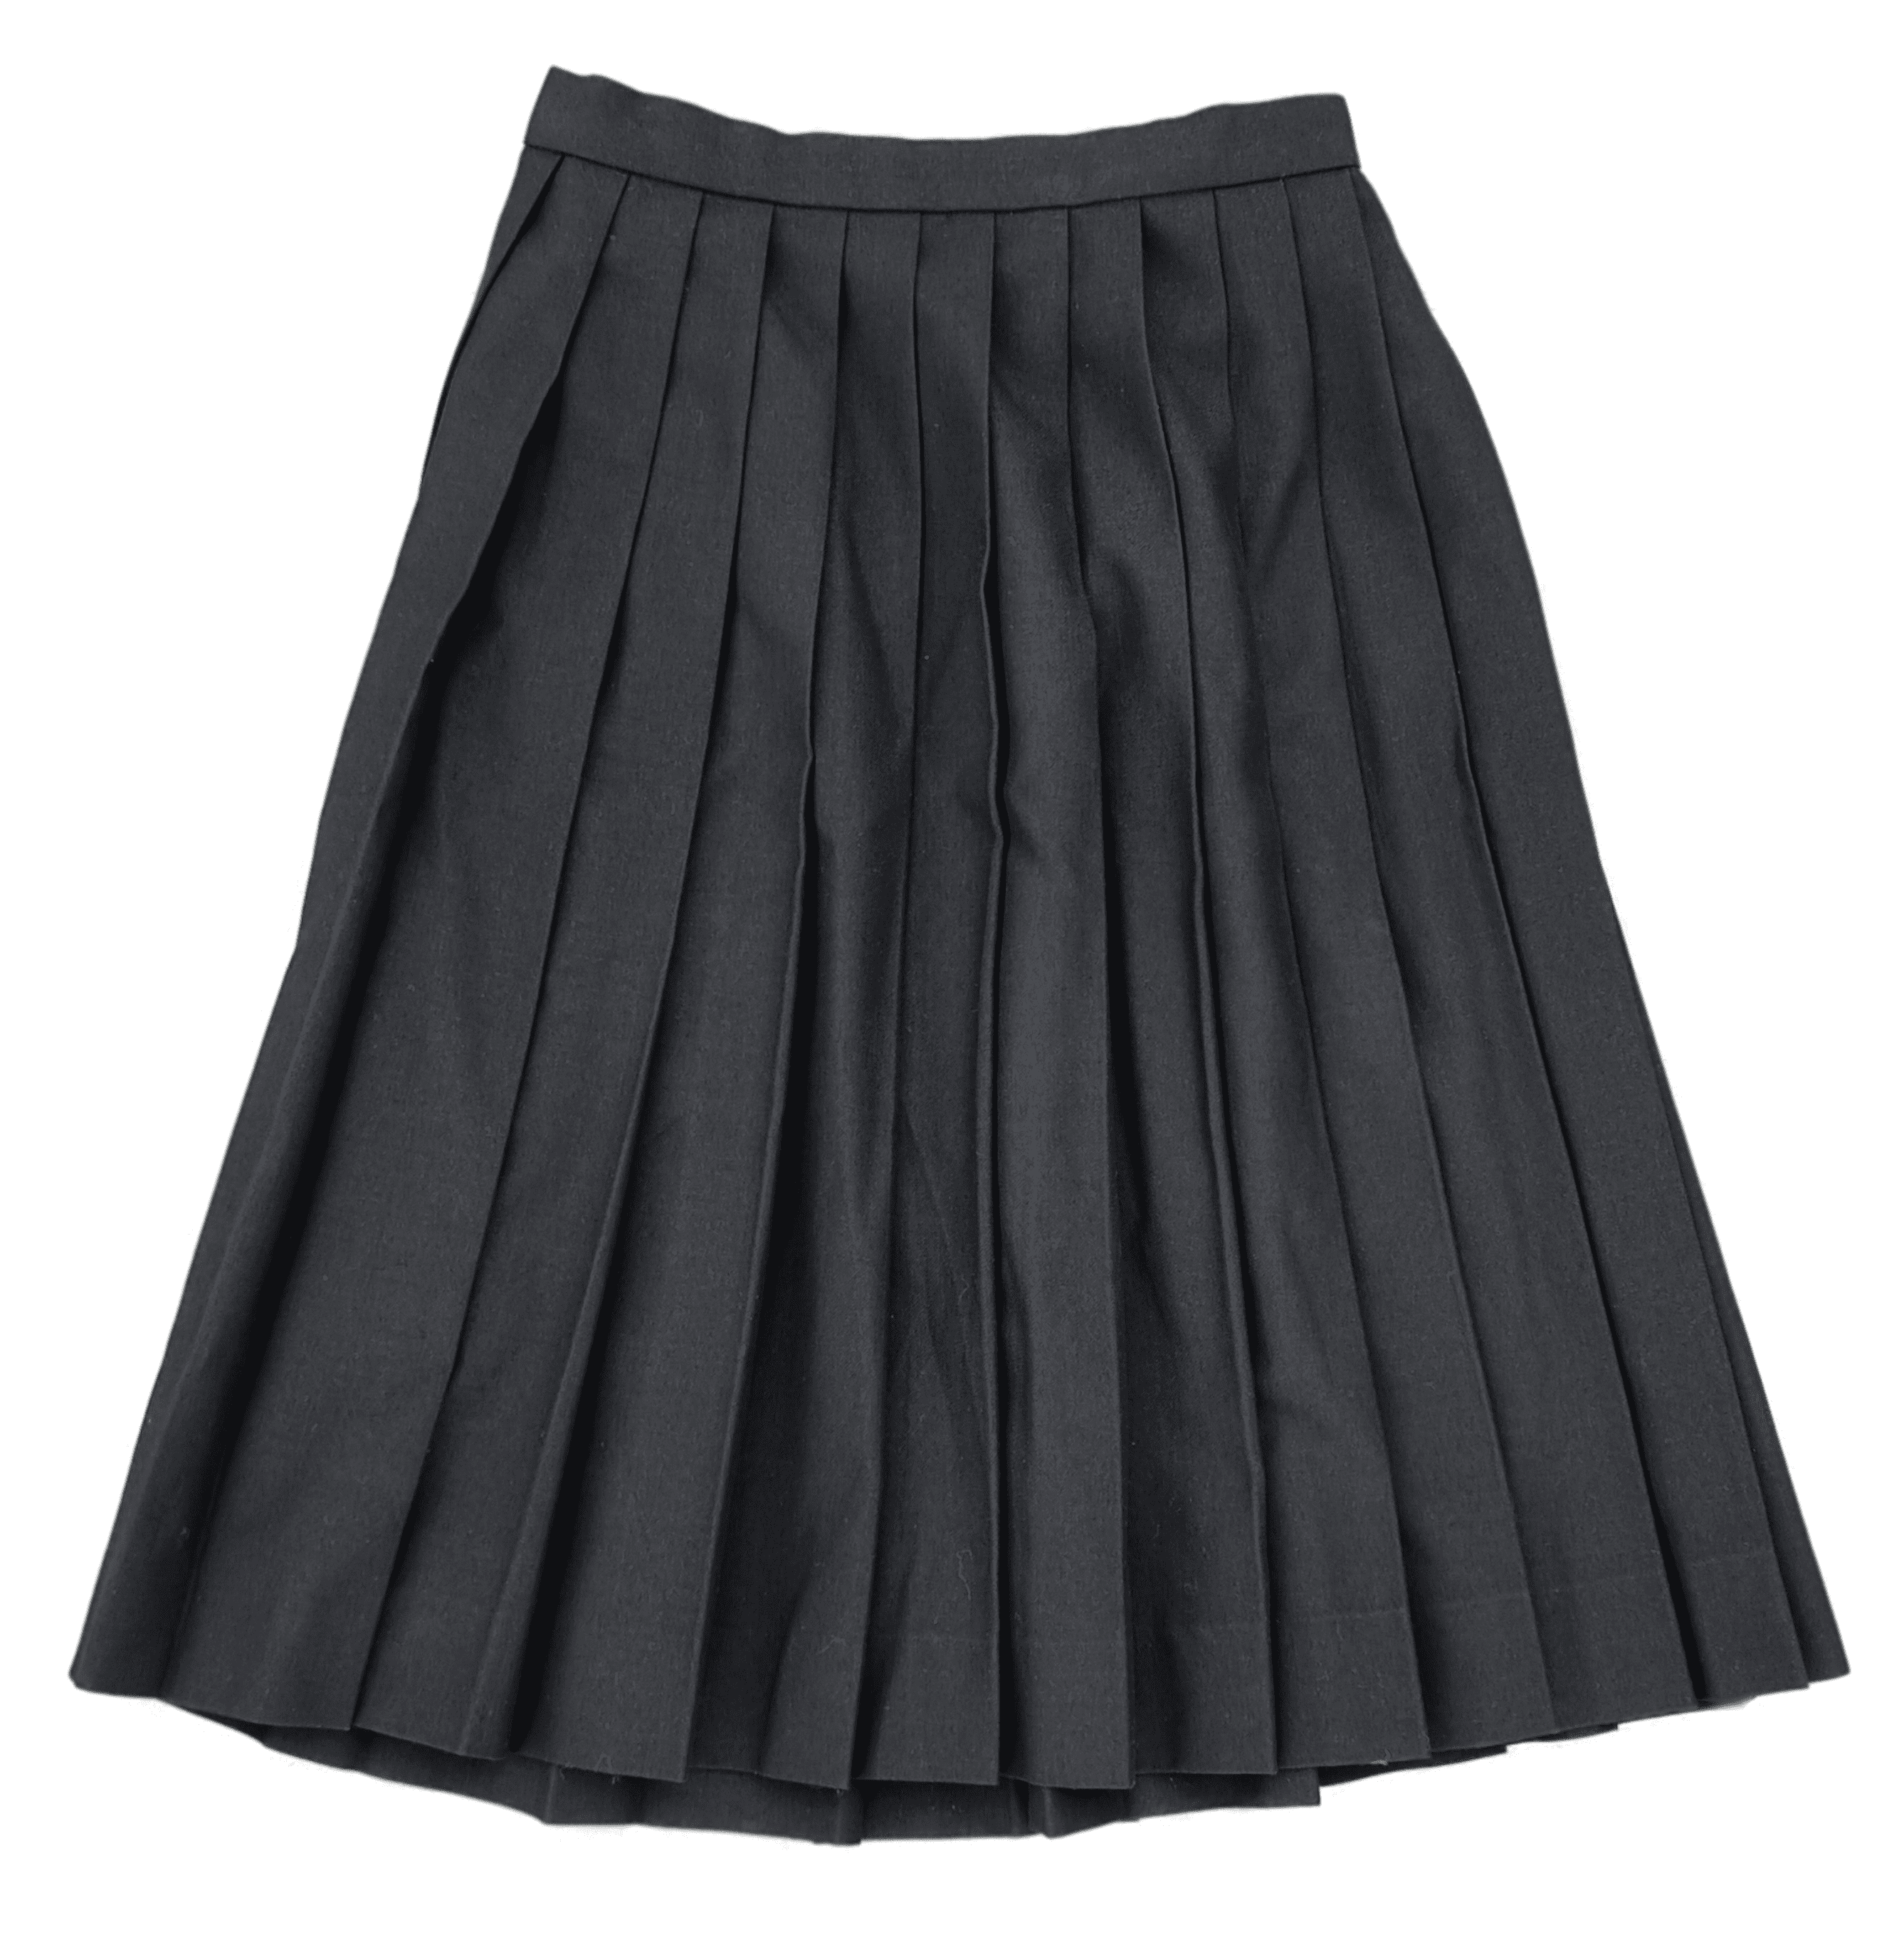 Faltenrock einer schwarzen japanischen Matrosen Schuluniform für Mädchen